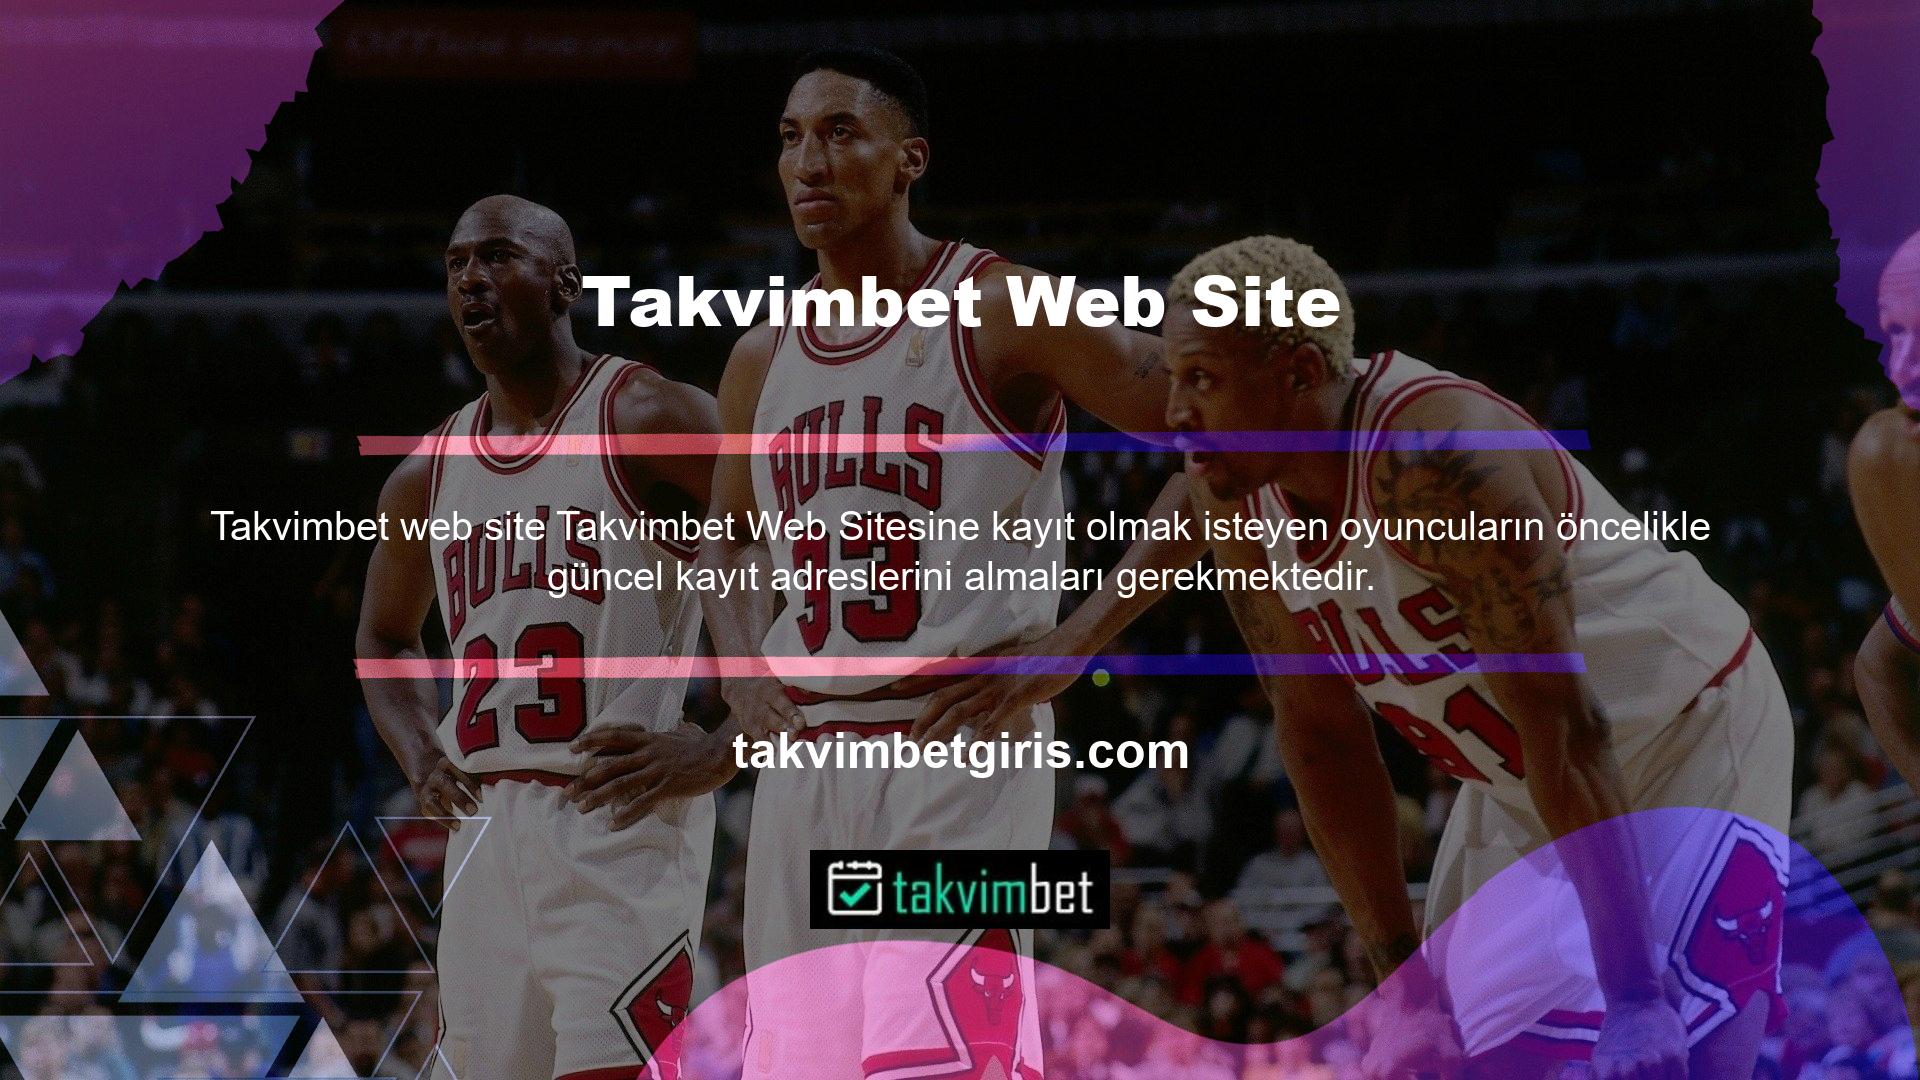 Online casino siteleri Türkiye’de yasal olarak faaliyet göstermediğinden hem site kullanıcılarının hem de sitelerin güvenliğini sağlamak için zaman zaman adresler değişmektedir